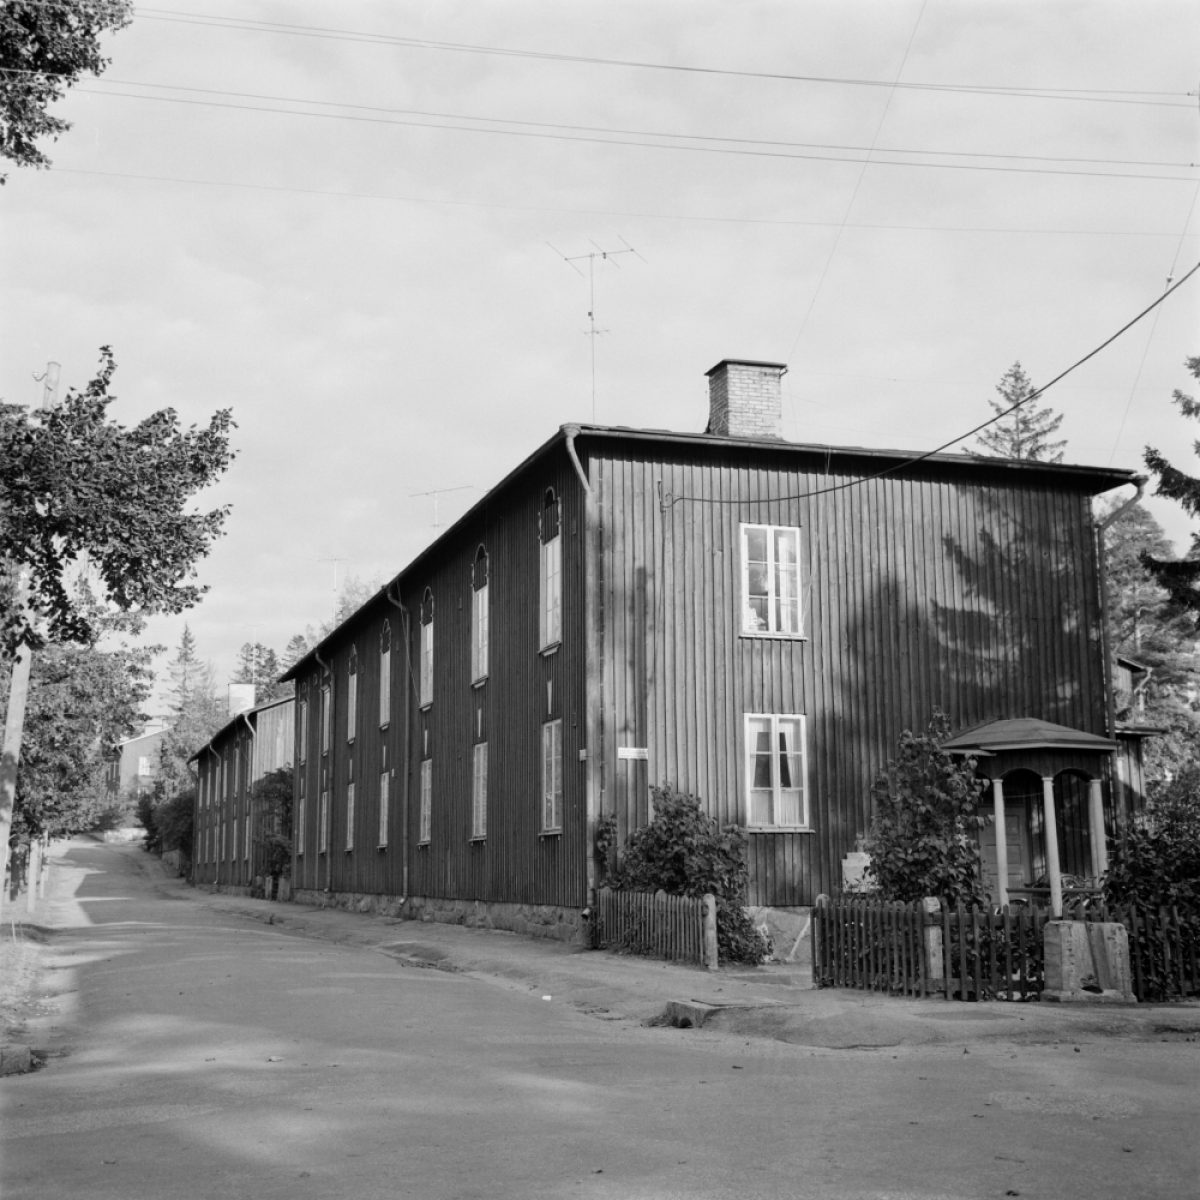 Puu-Käpylää noin vuonna 1960. Kuva: Eero Häyrinen / Uusi Suomi - Iltalehti / JOKA / Museovirasto